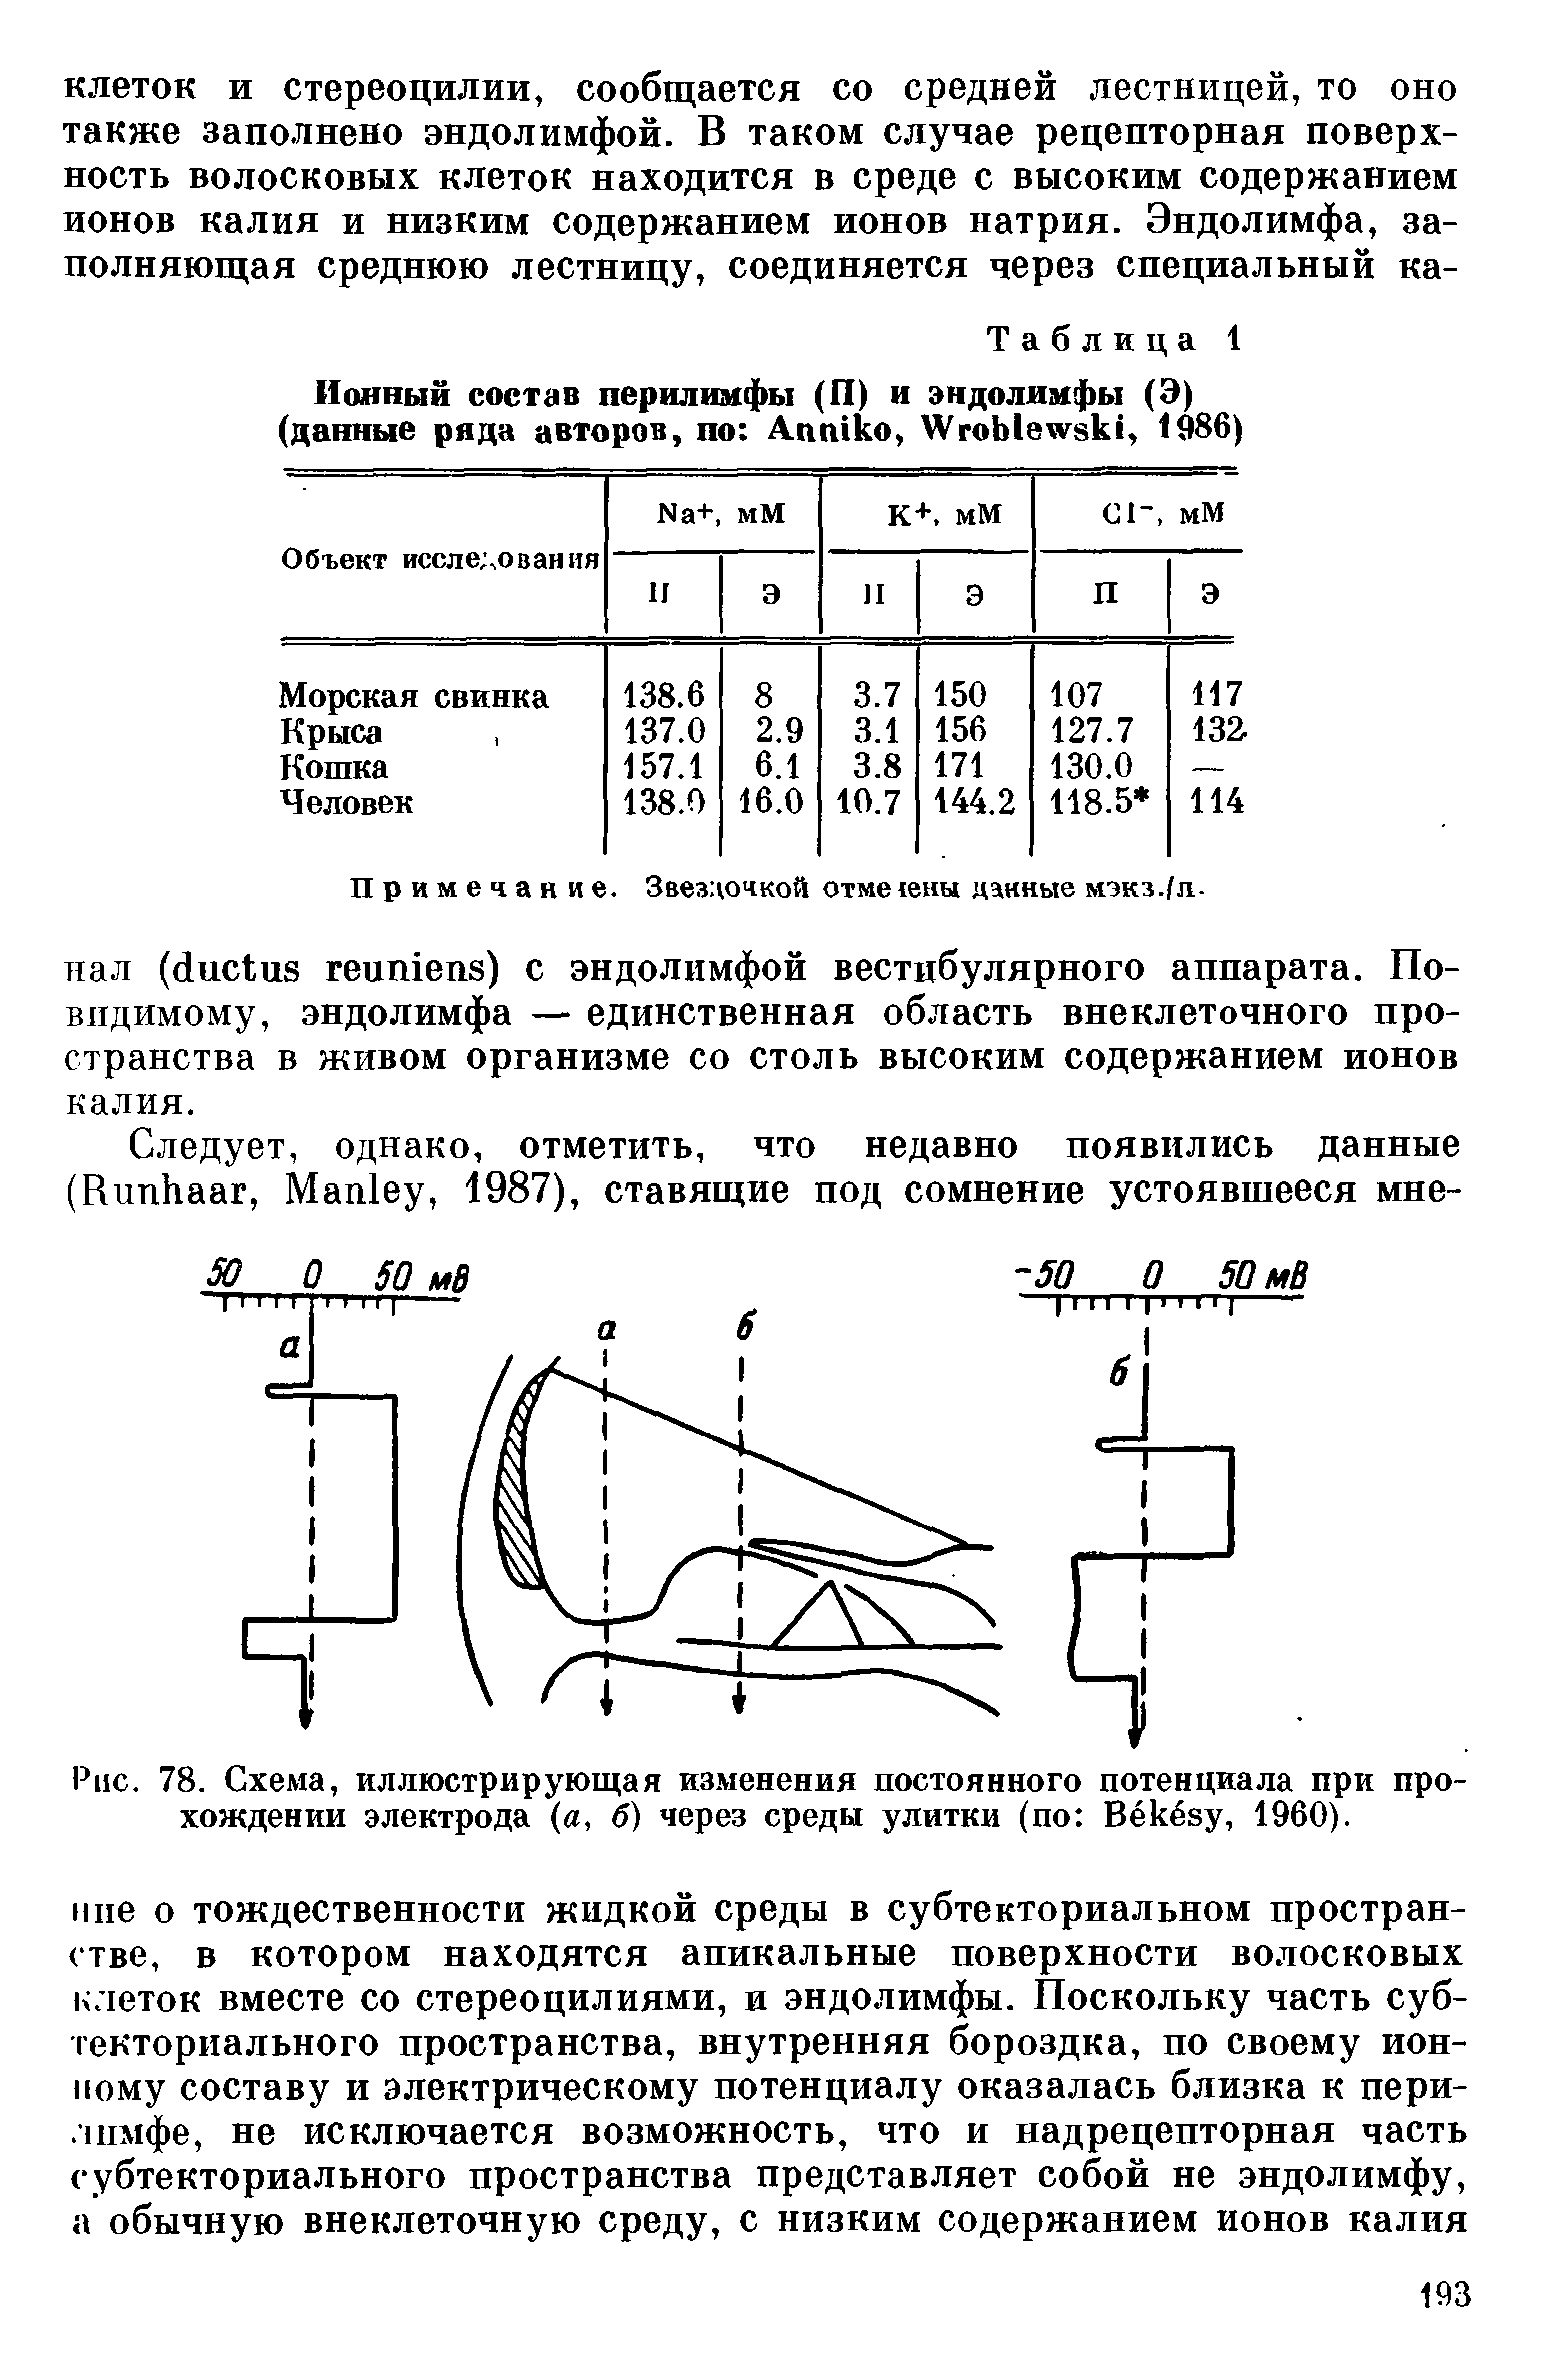 Рис. 78. Схема, иллюстрирующая изменения постоянного потенциала при прохождении электрода (а, б) через среды улитки (по Вёкёиу, 1960).